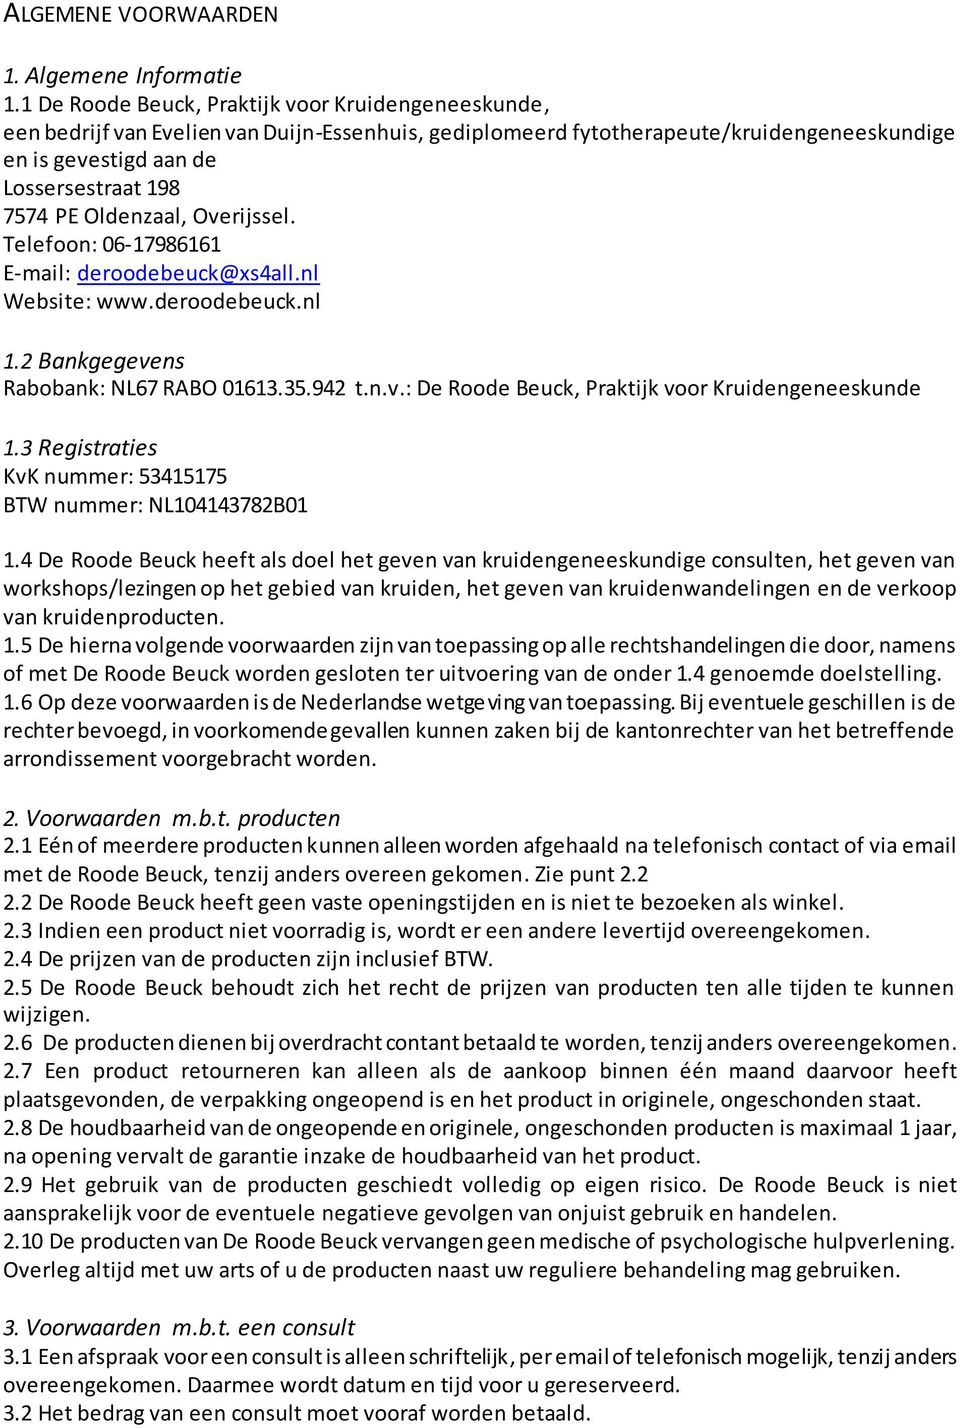 Oldenzaal, Overijssel. Telefoon: 06-17986161 E-mail: deroodebeuck@xs4all.nl Website: www.deroodebeuck.nl 1.2 Bankgegevens Rabobank: NL67 RABO 01613.35.942 t.n.v.: De Roode Beuck, Praktijk voor Kruidengeneeskunde 1.